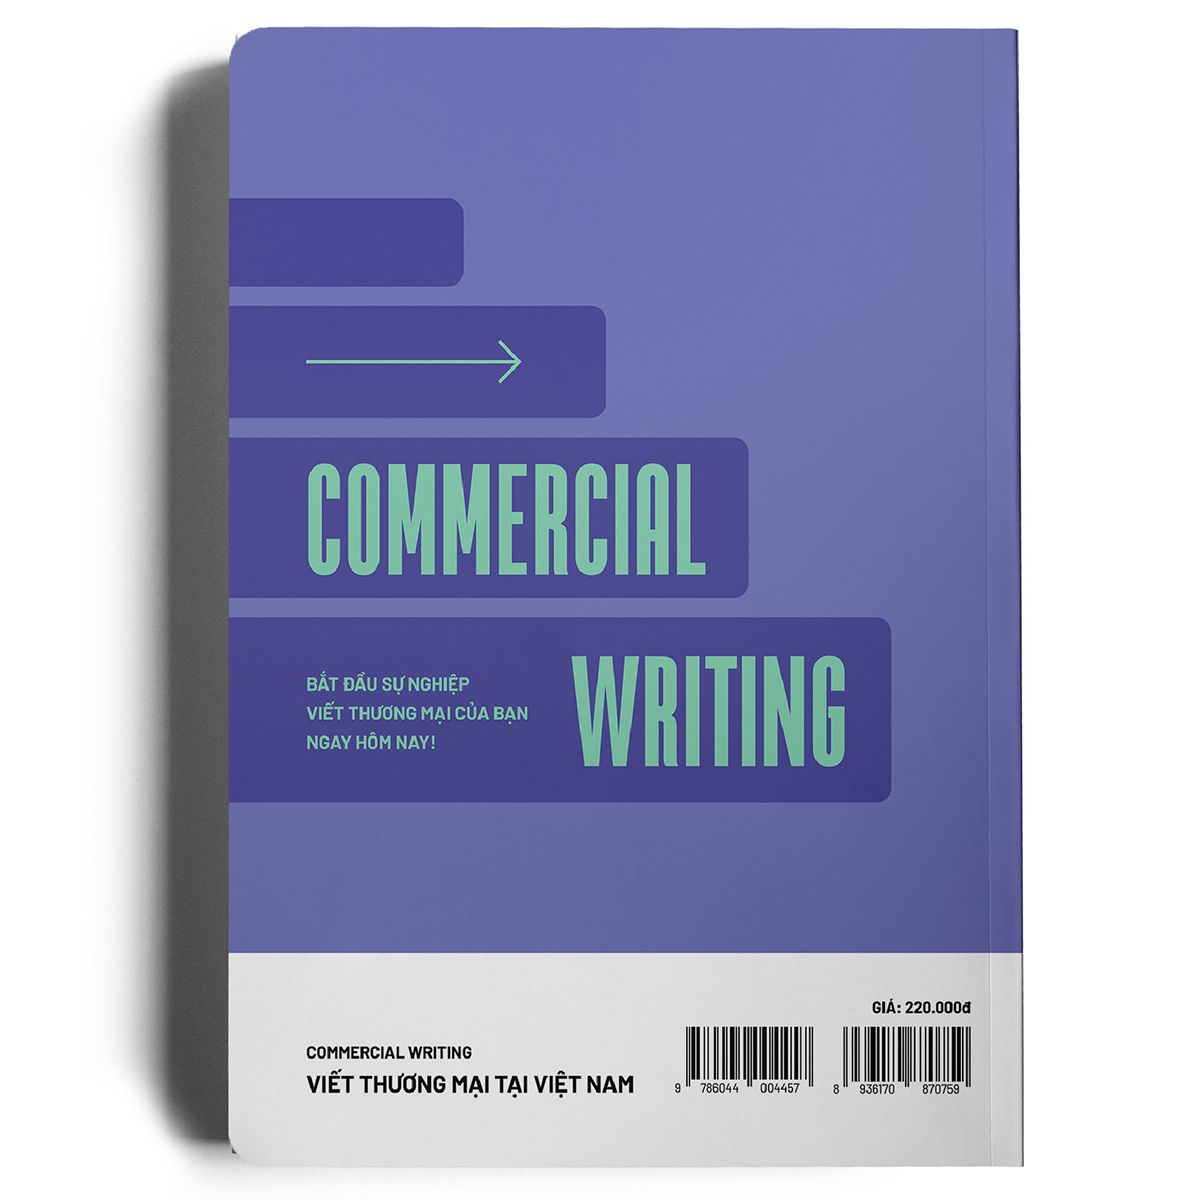 COMMERCIAL WRITING - Viết thương mại tại Việt Nam